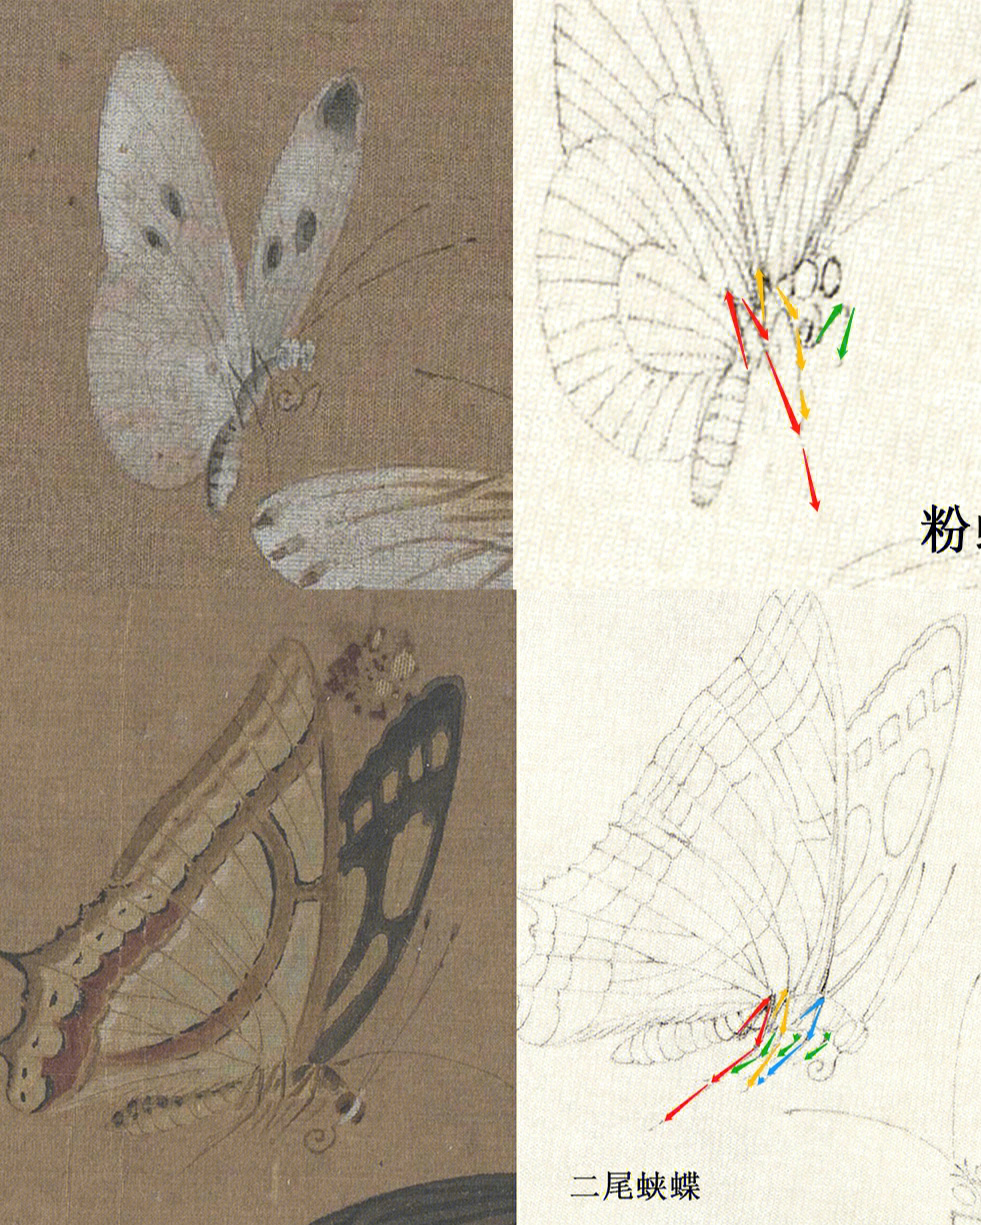 菜粉蝶,金灰蝶,丝带凤蝶采用淡墨勾勒,注意线条要用游丝描,细且有弹性